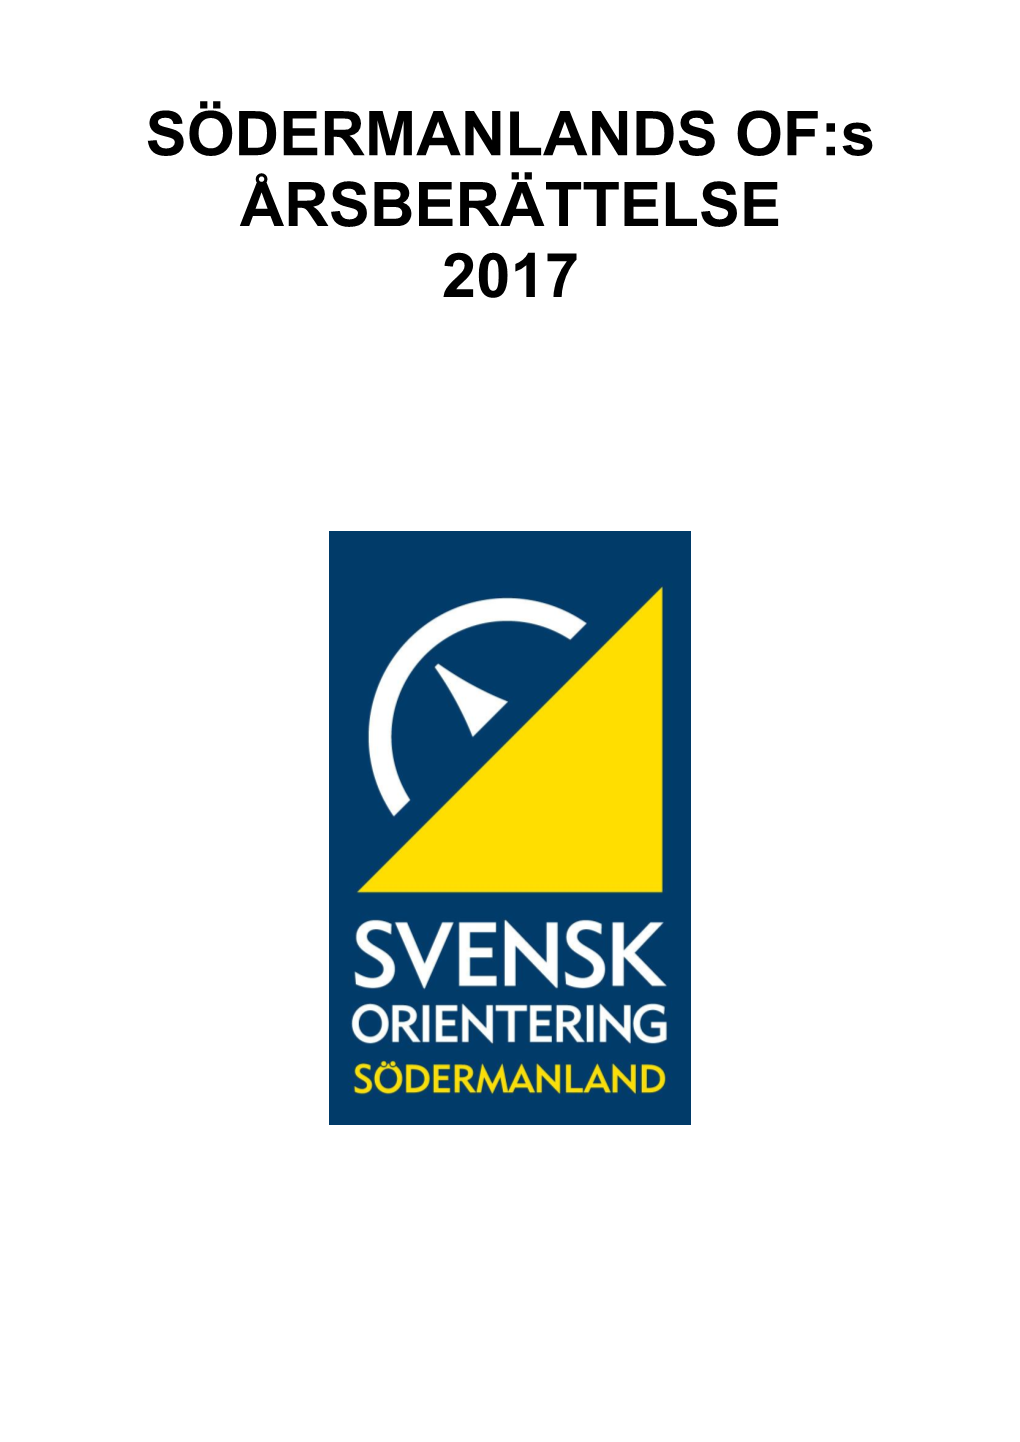 SÖDERMANLANDS OF:S ÅRSBERÄTTELSE 2017